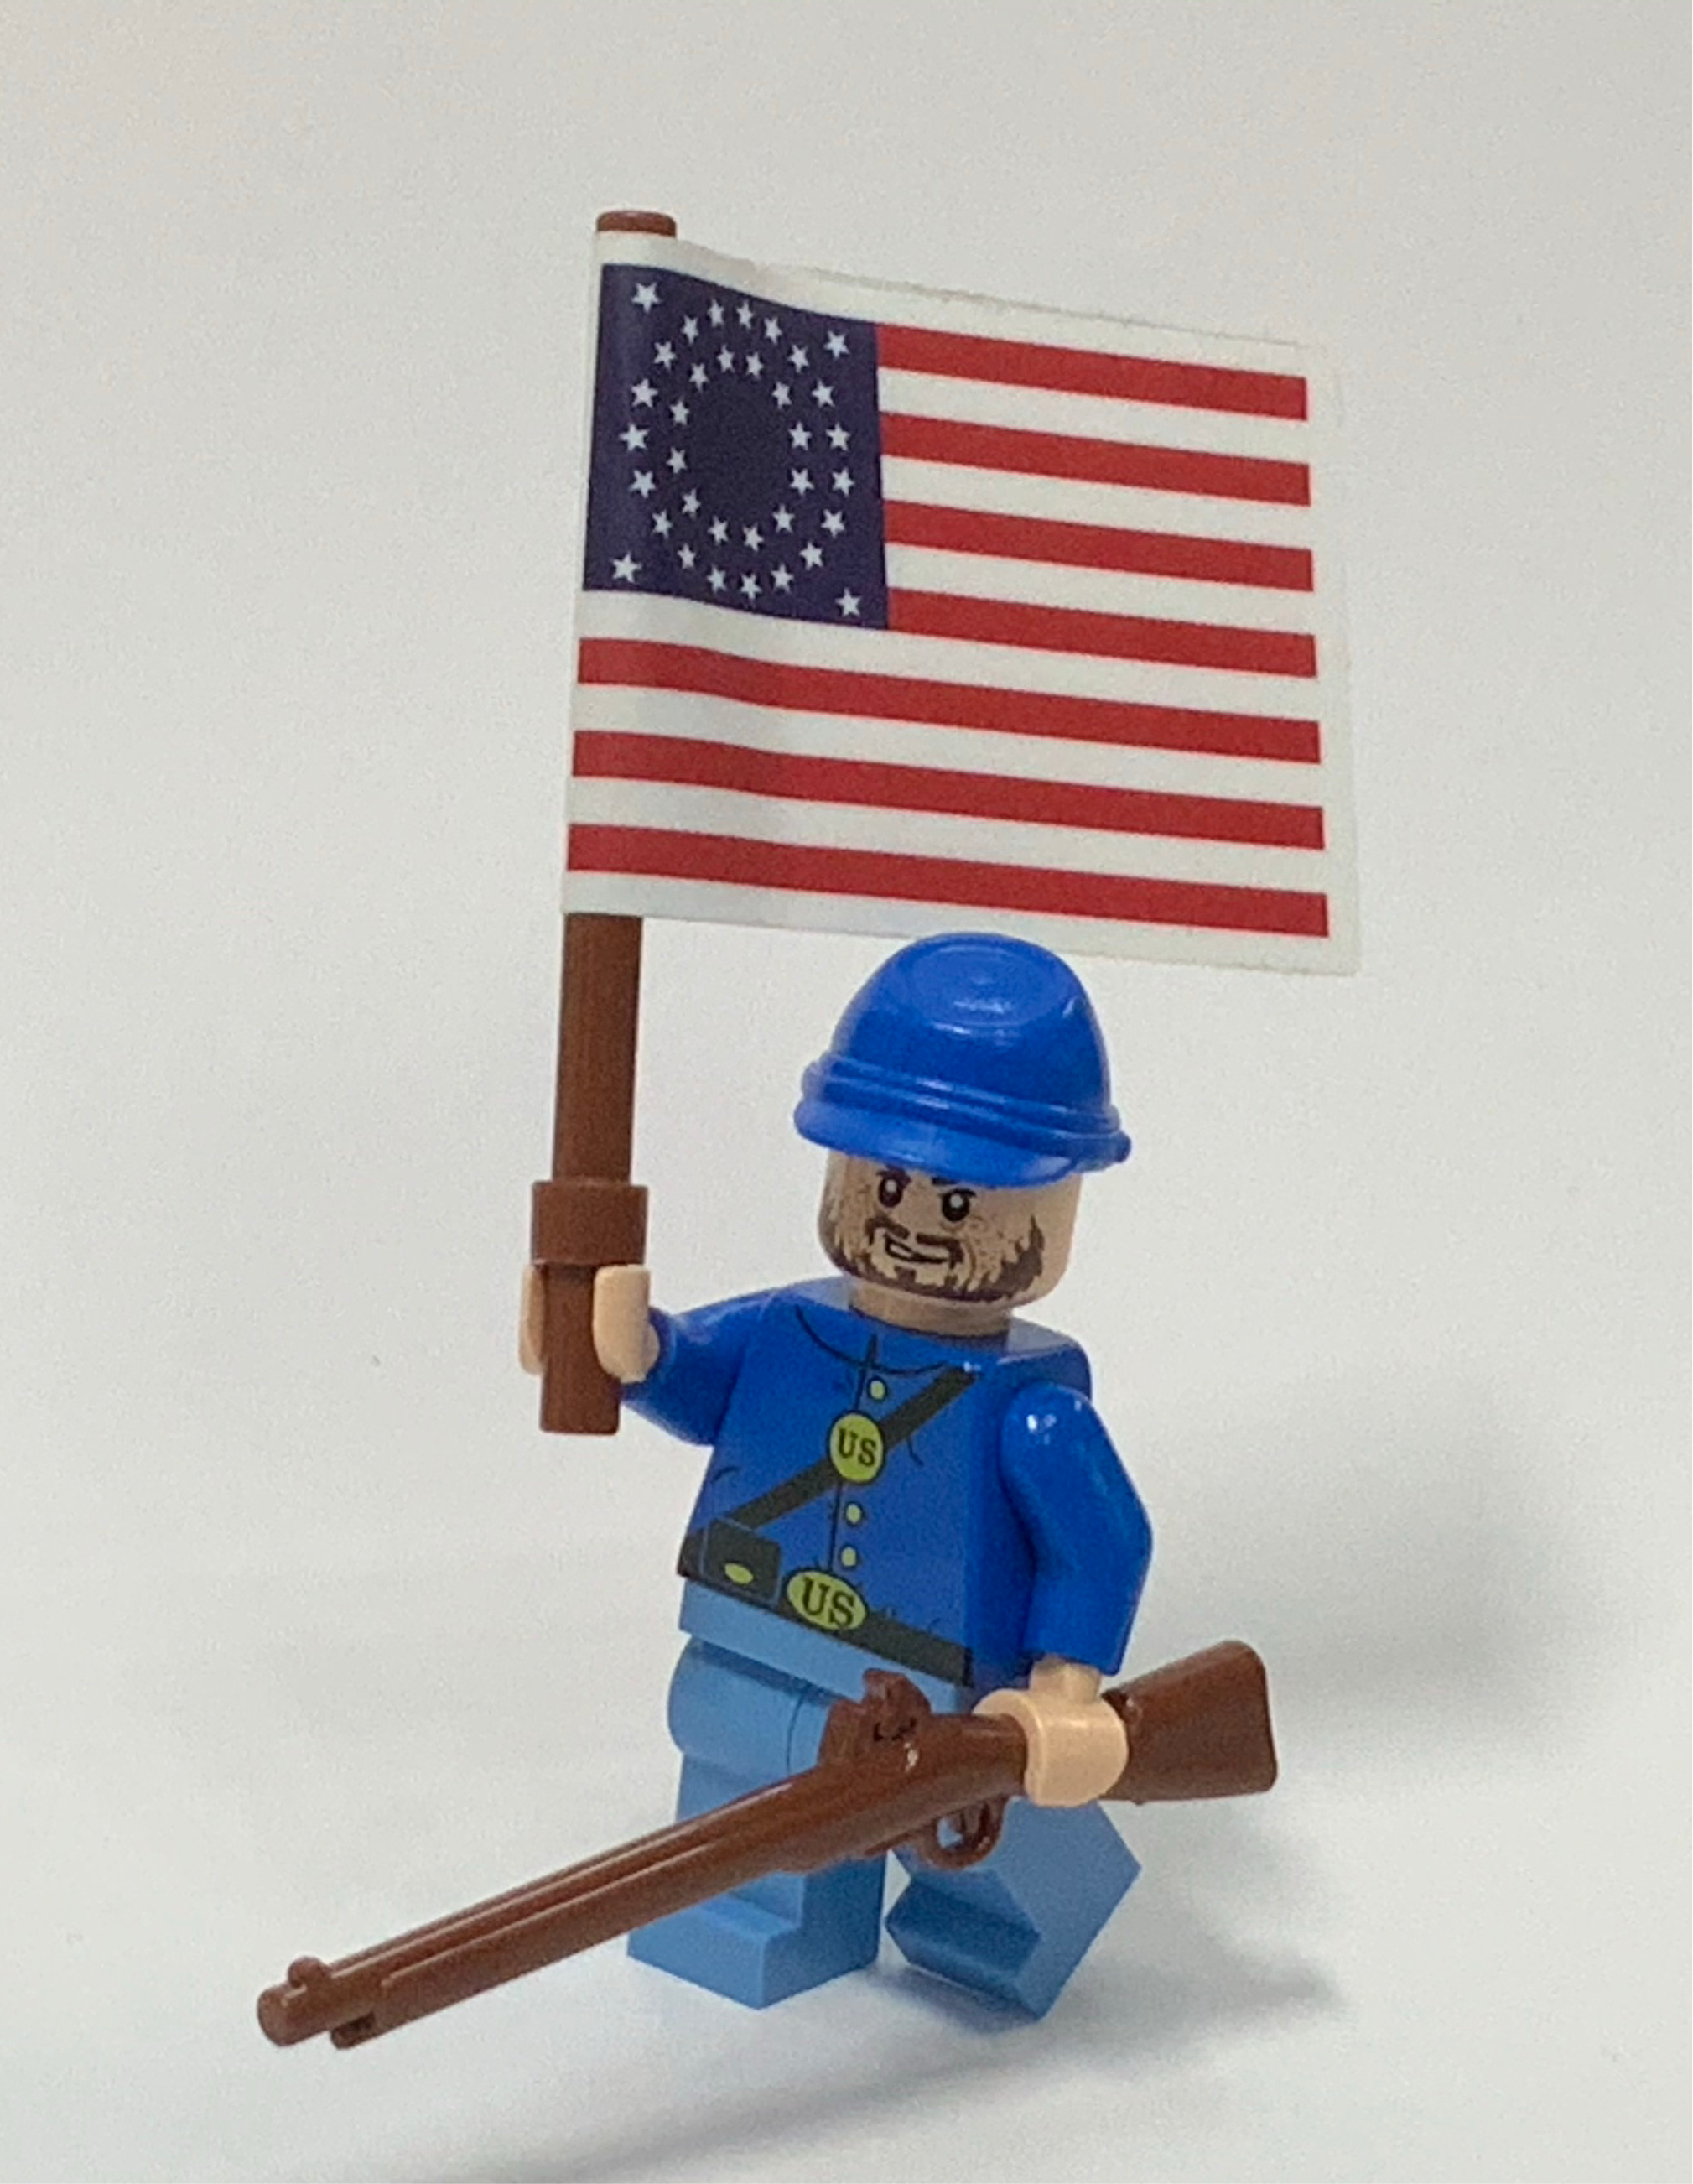 Building Custom LEGO Army Minifigures - Minifigures.com Blog